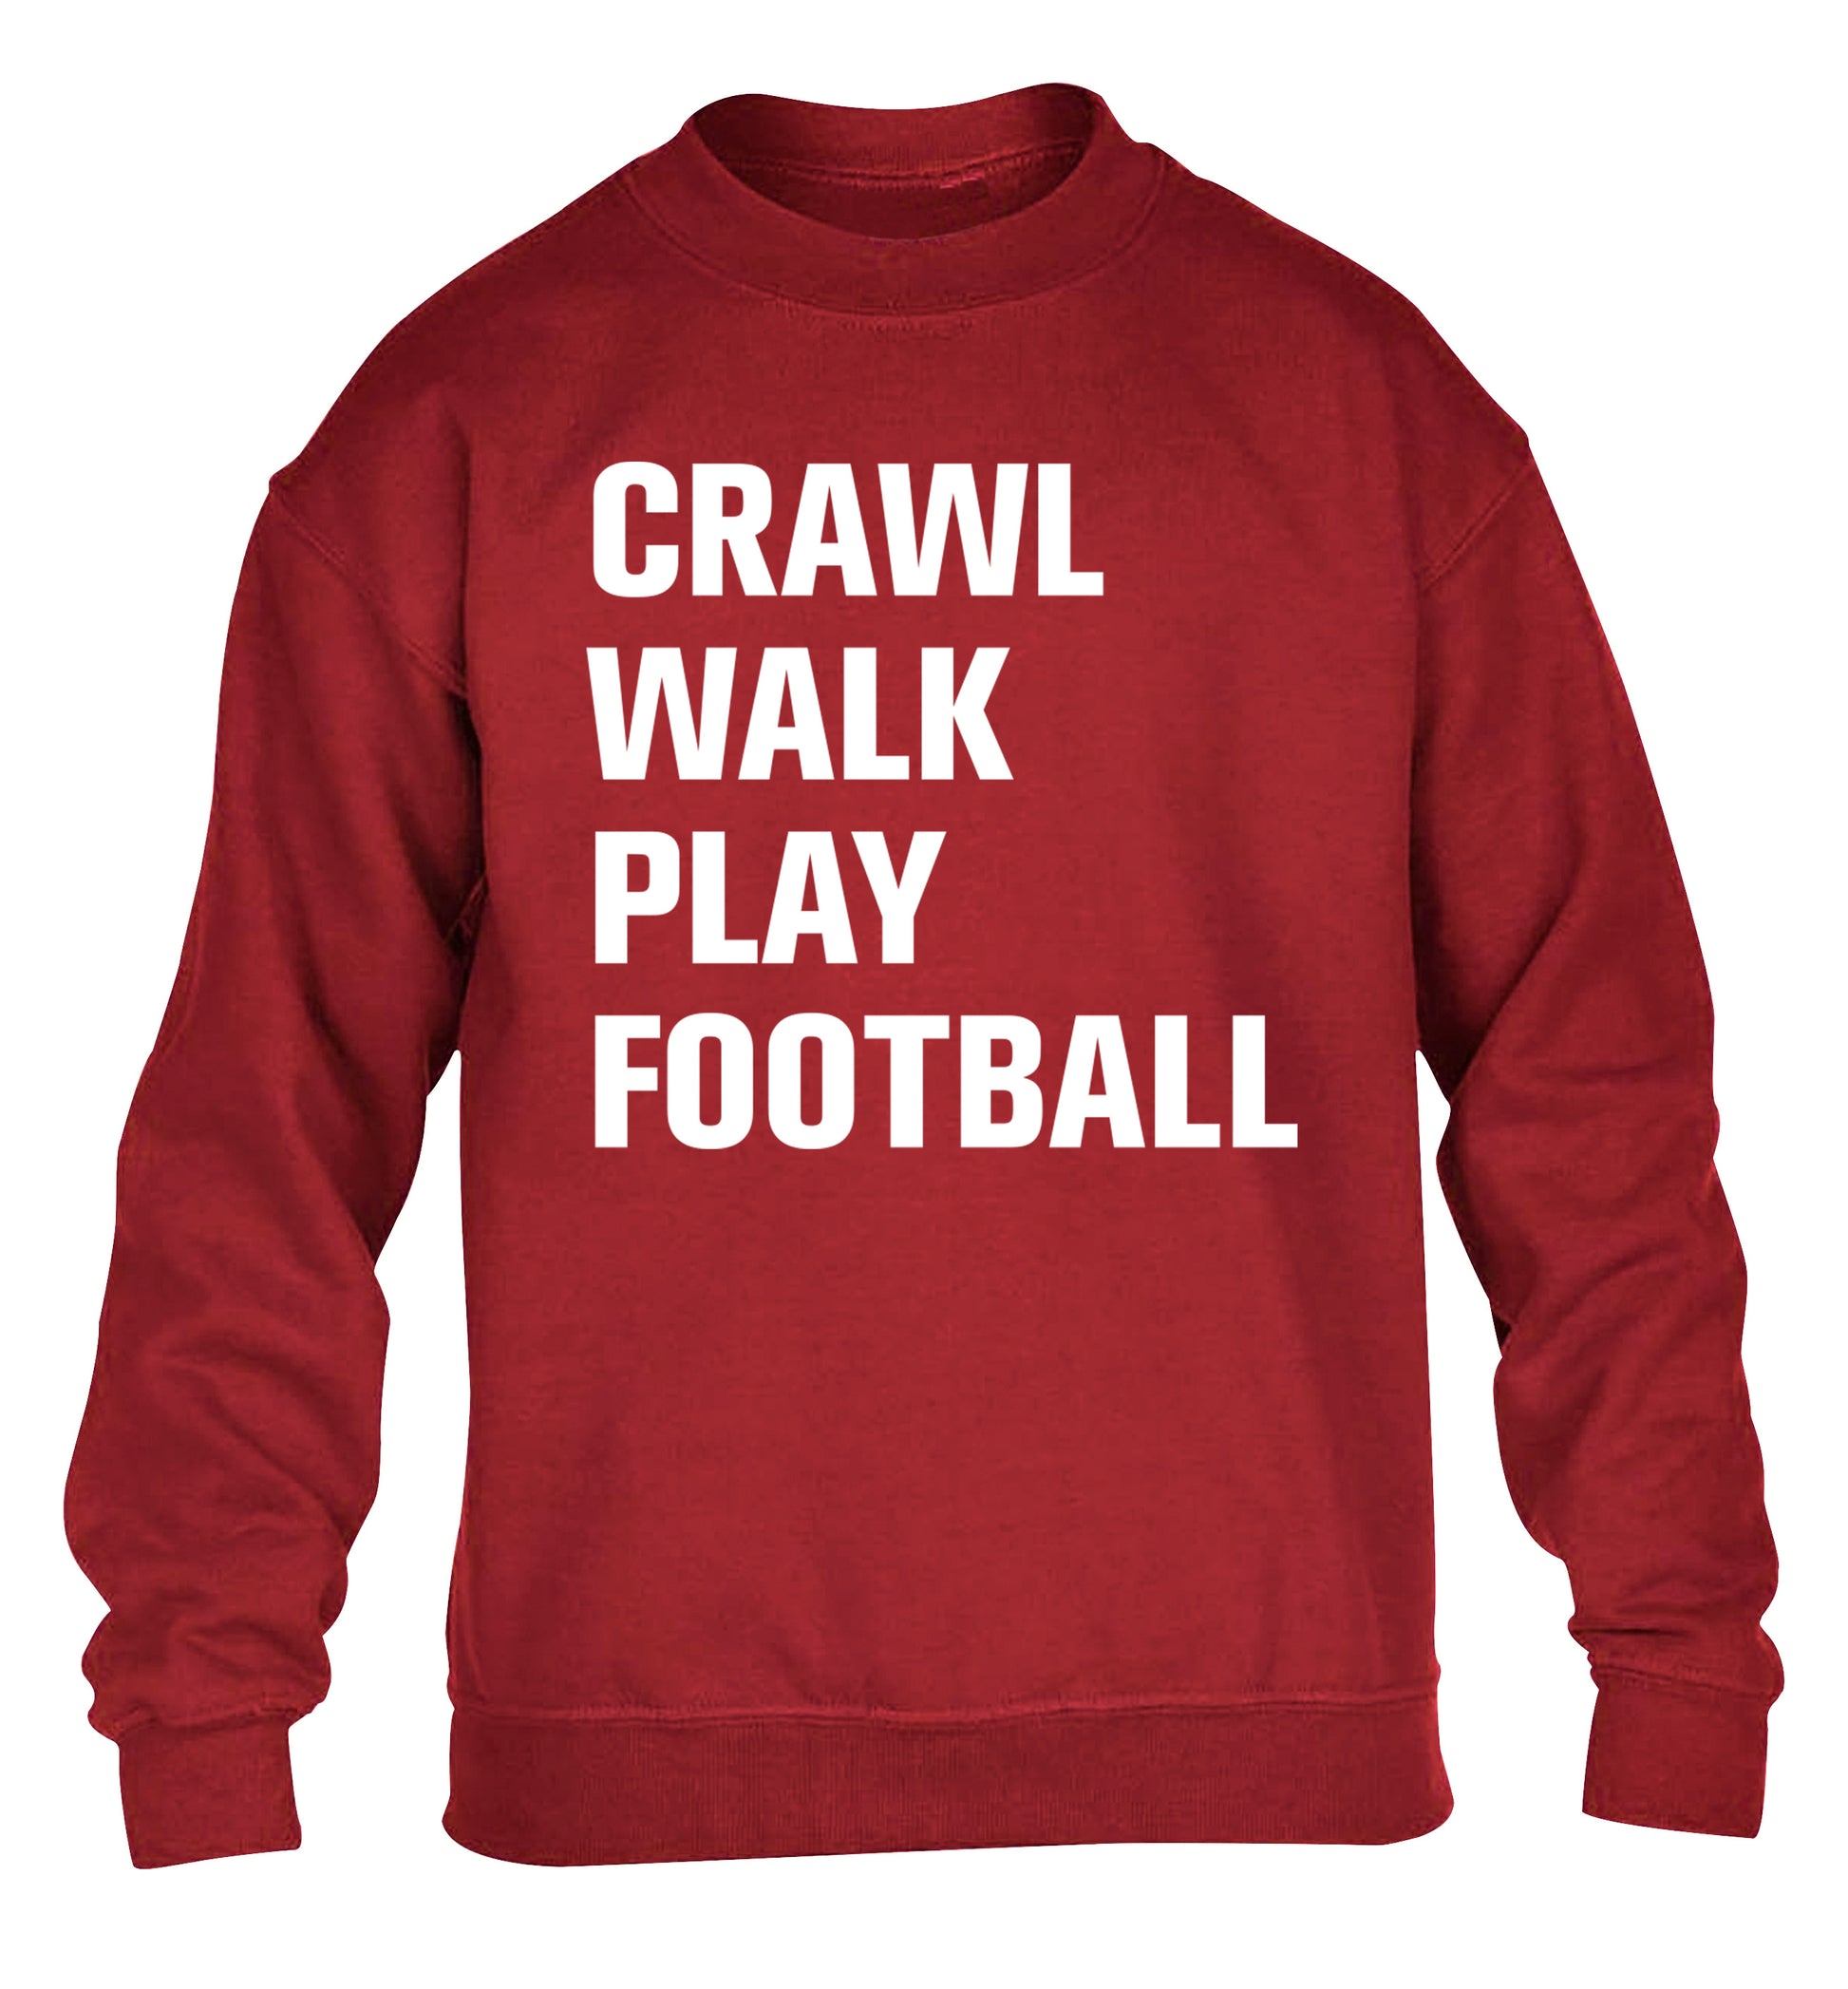 Crawl, walk, play football children's grey sweater 12-13 Years